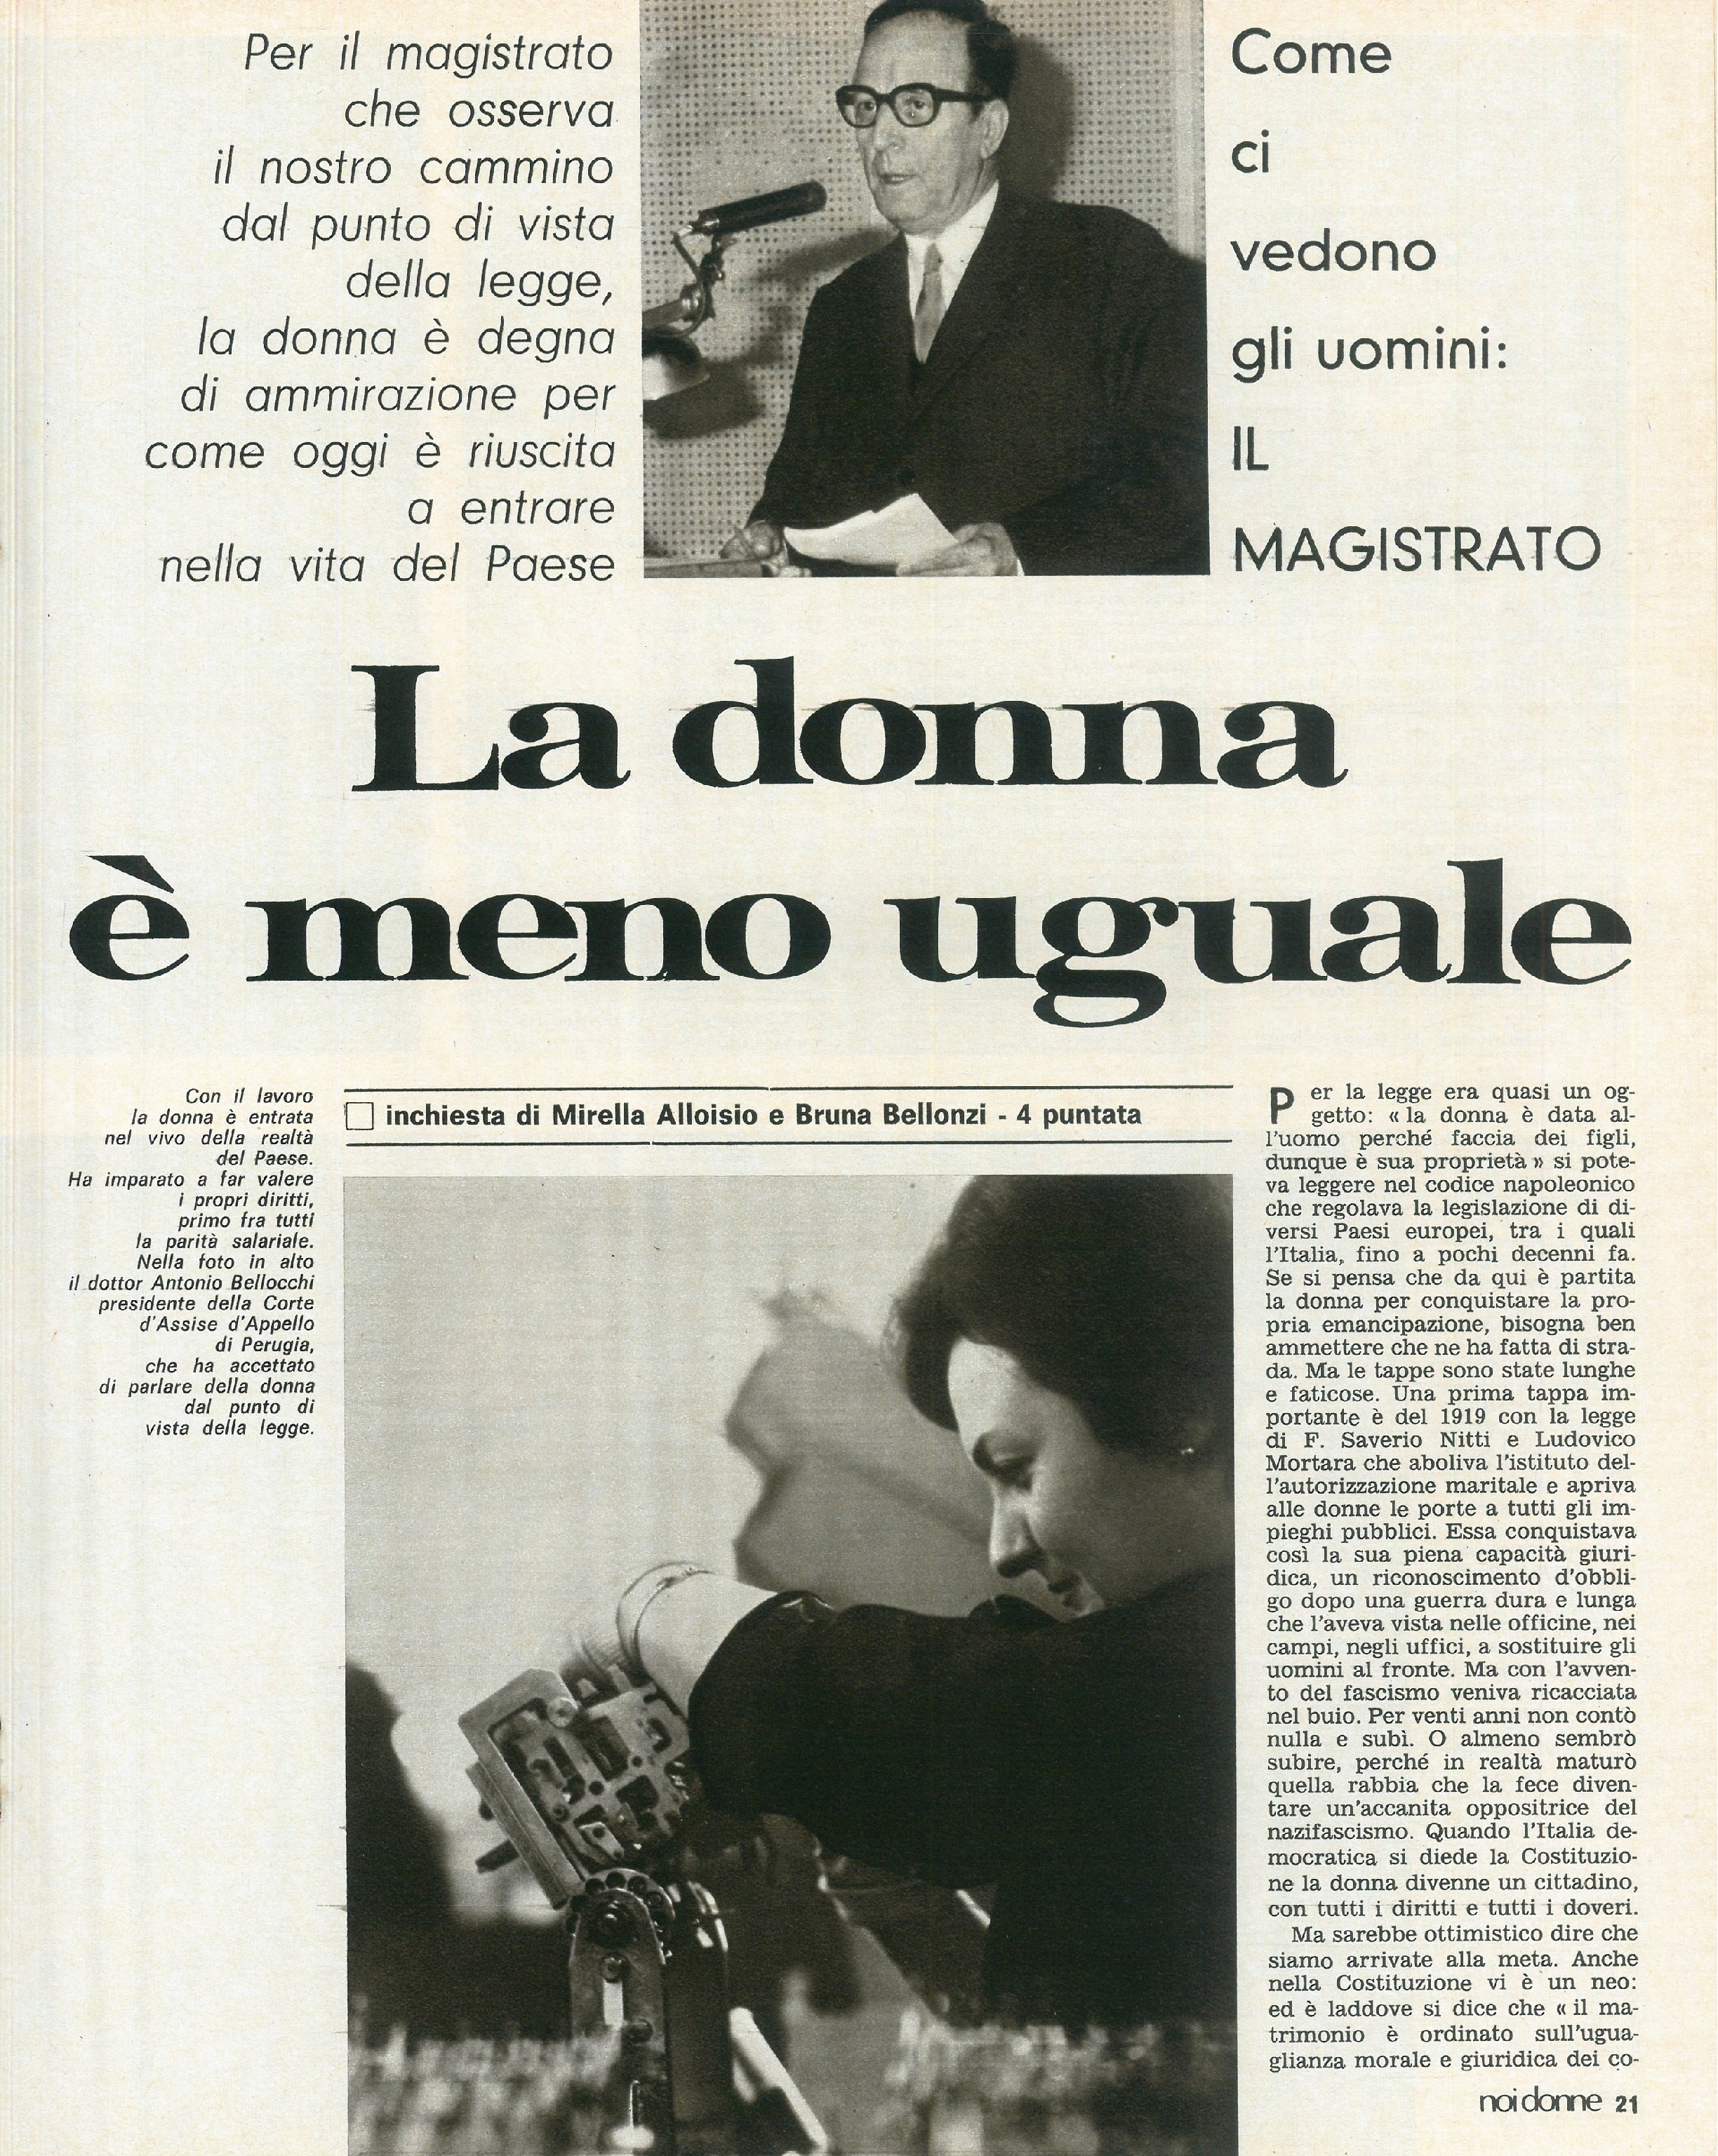 Foto: Divorzio: la prima coppia a Bologna; Modena: la manifestazione delle giovani operaie tessili e a domicilio; Angela Davis in carcere; Il caro-vita.